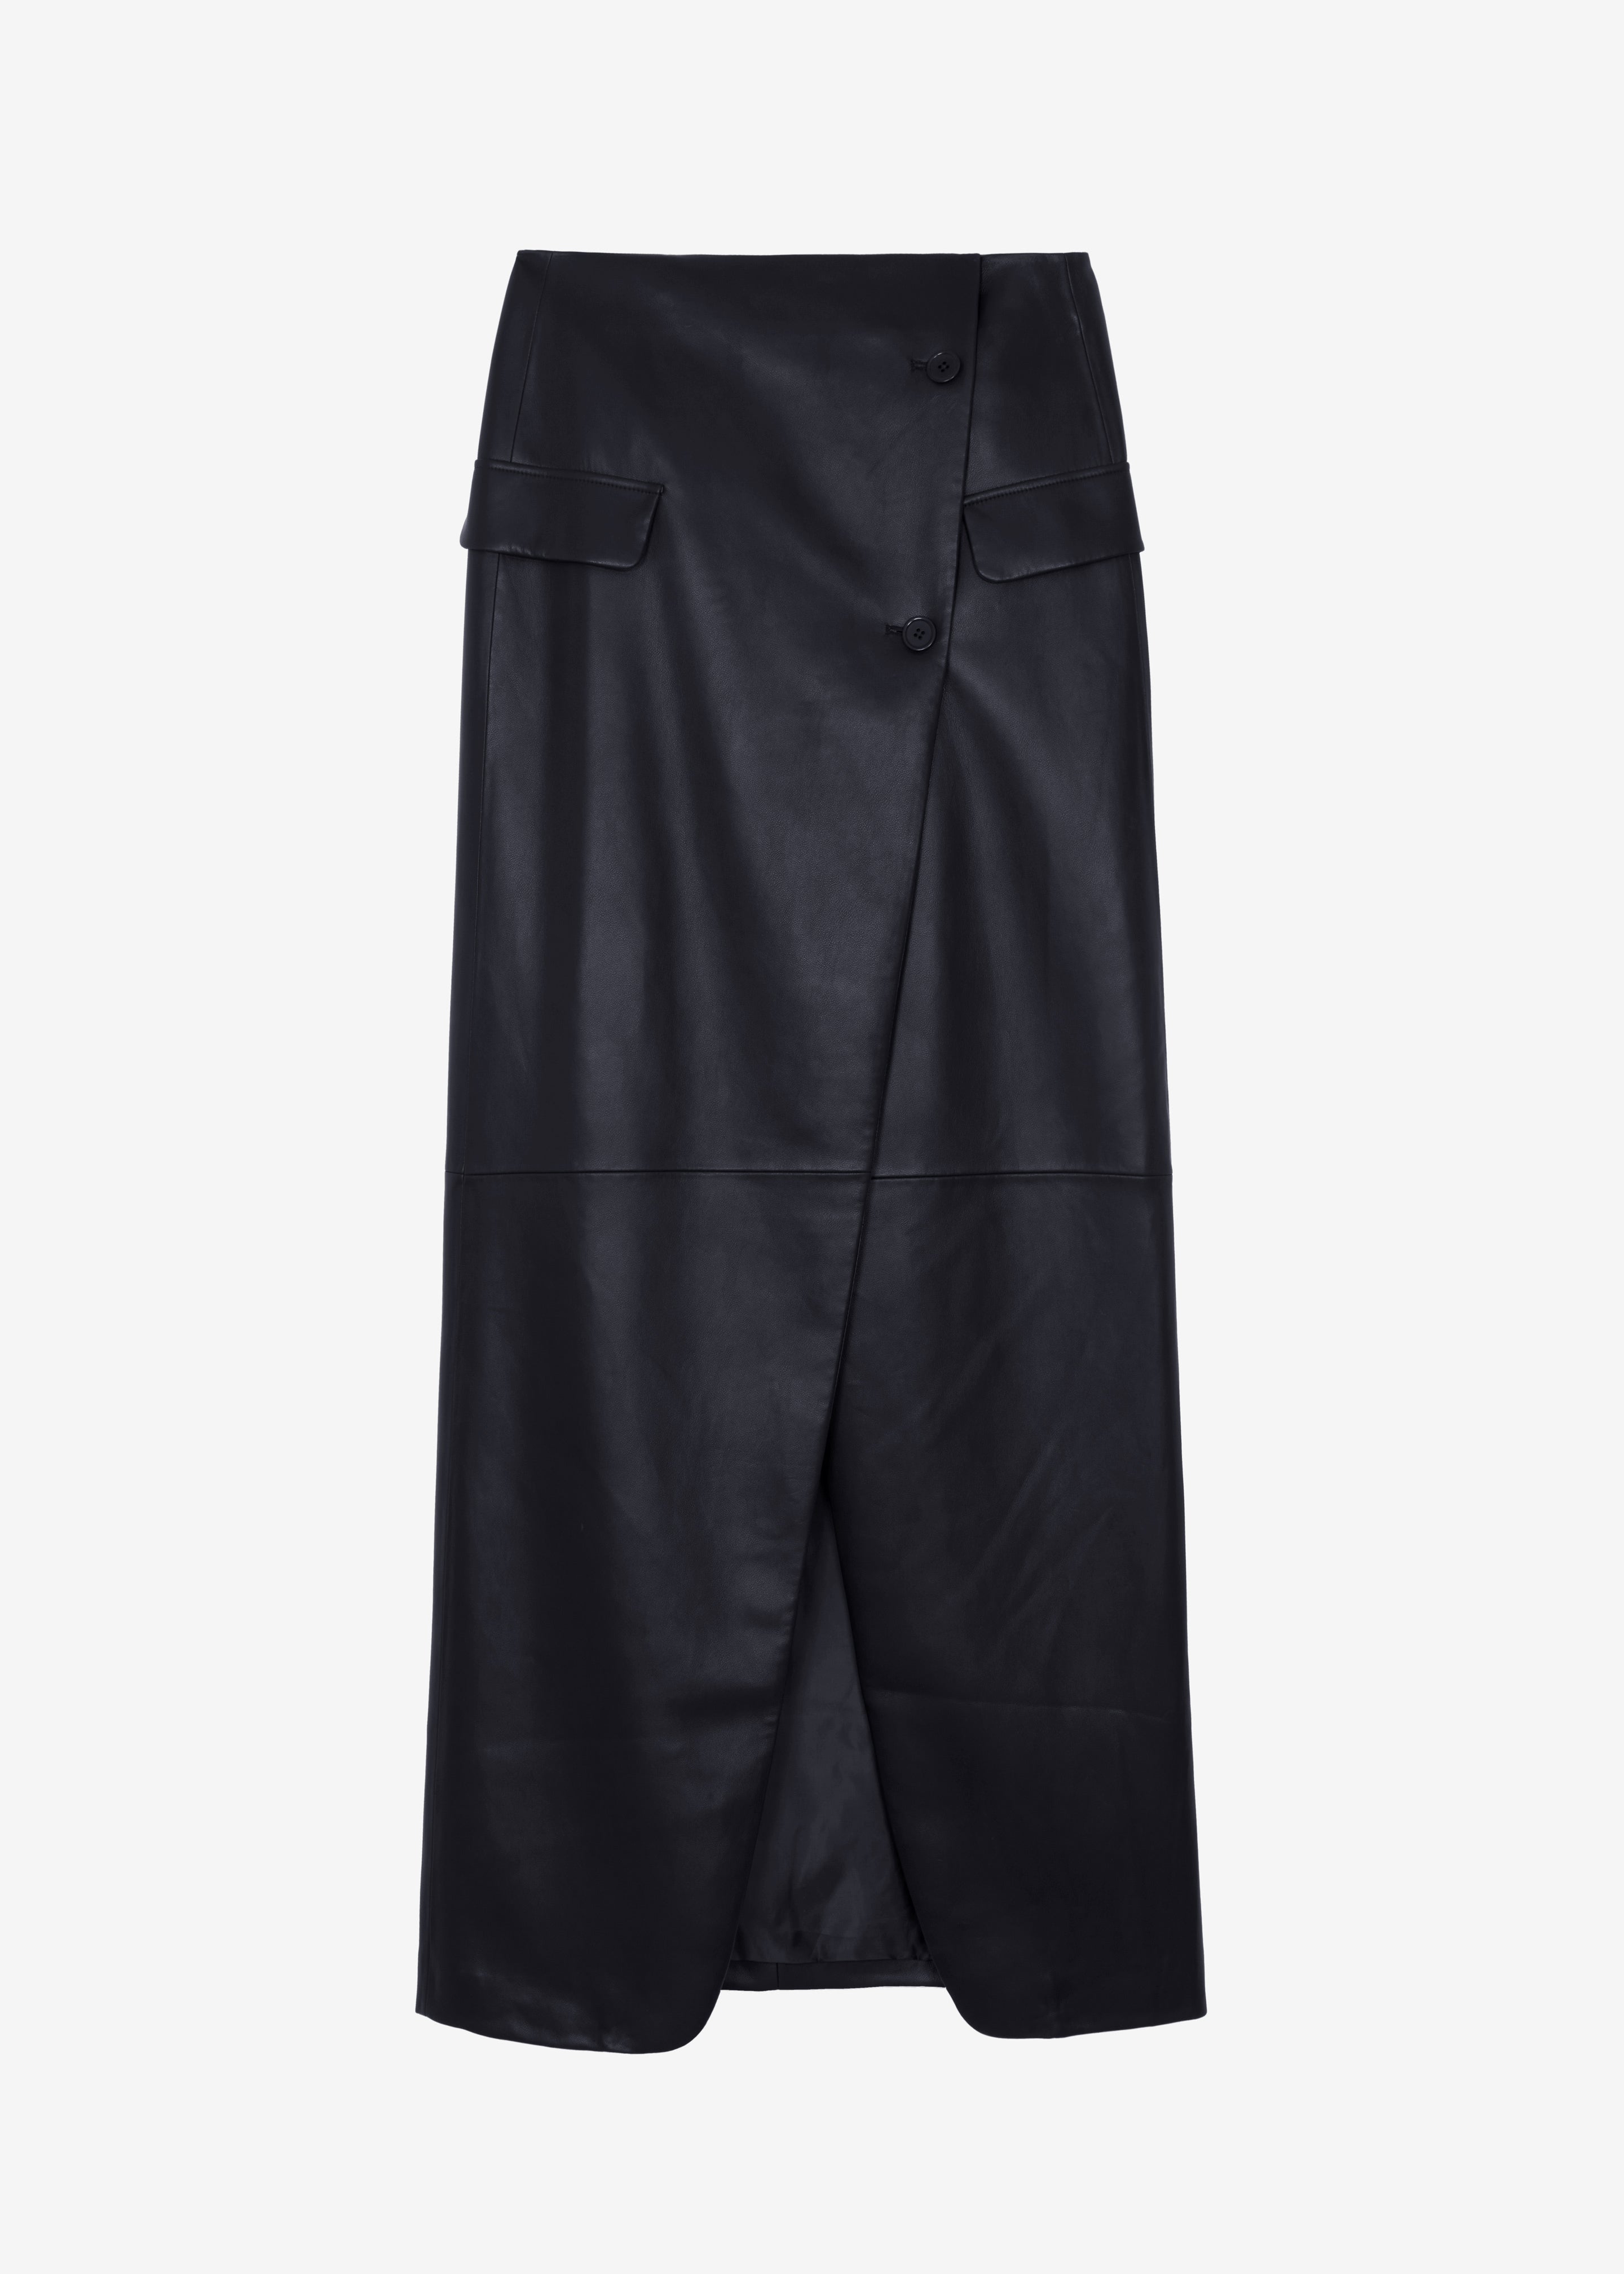 Nan Long Faux Leather Cross Skirt - Black - 9